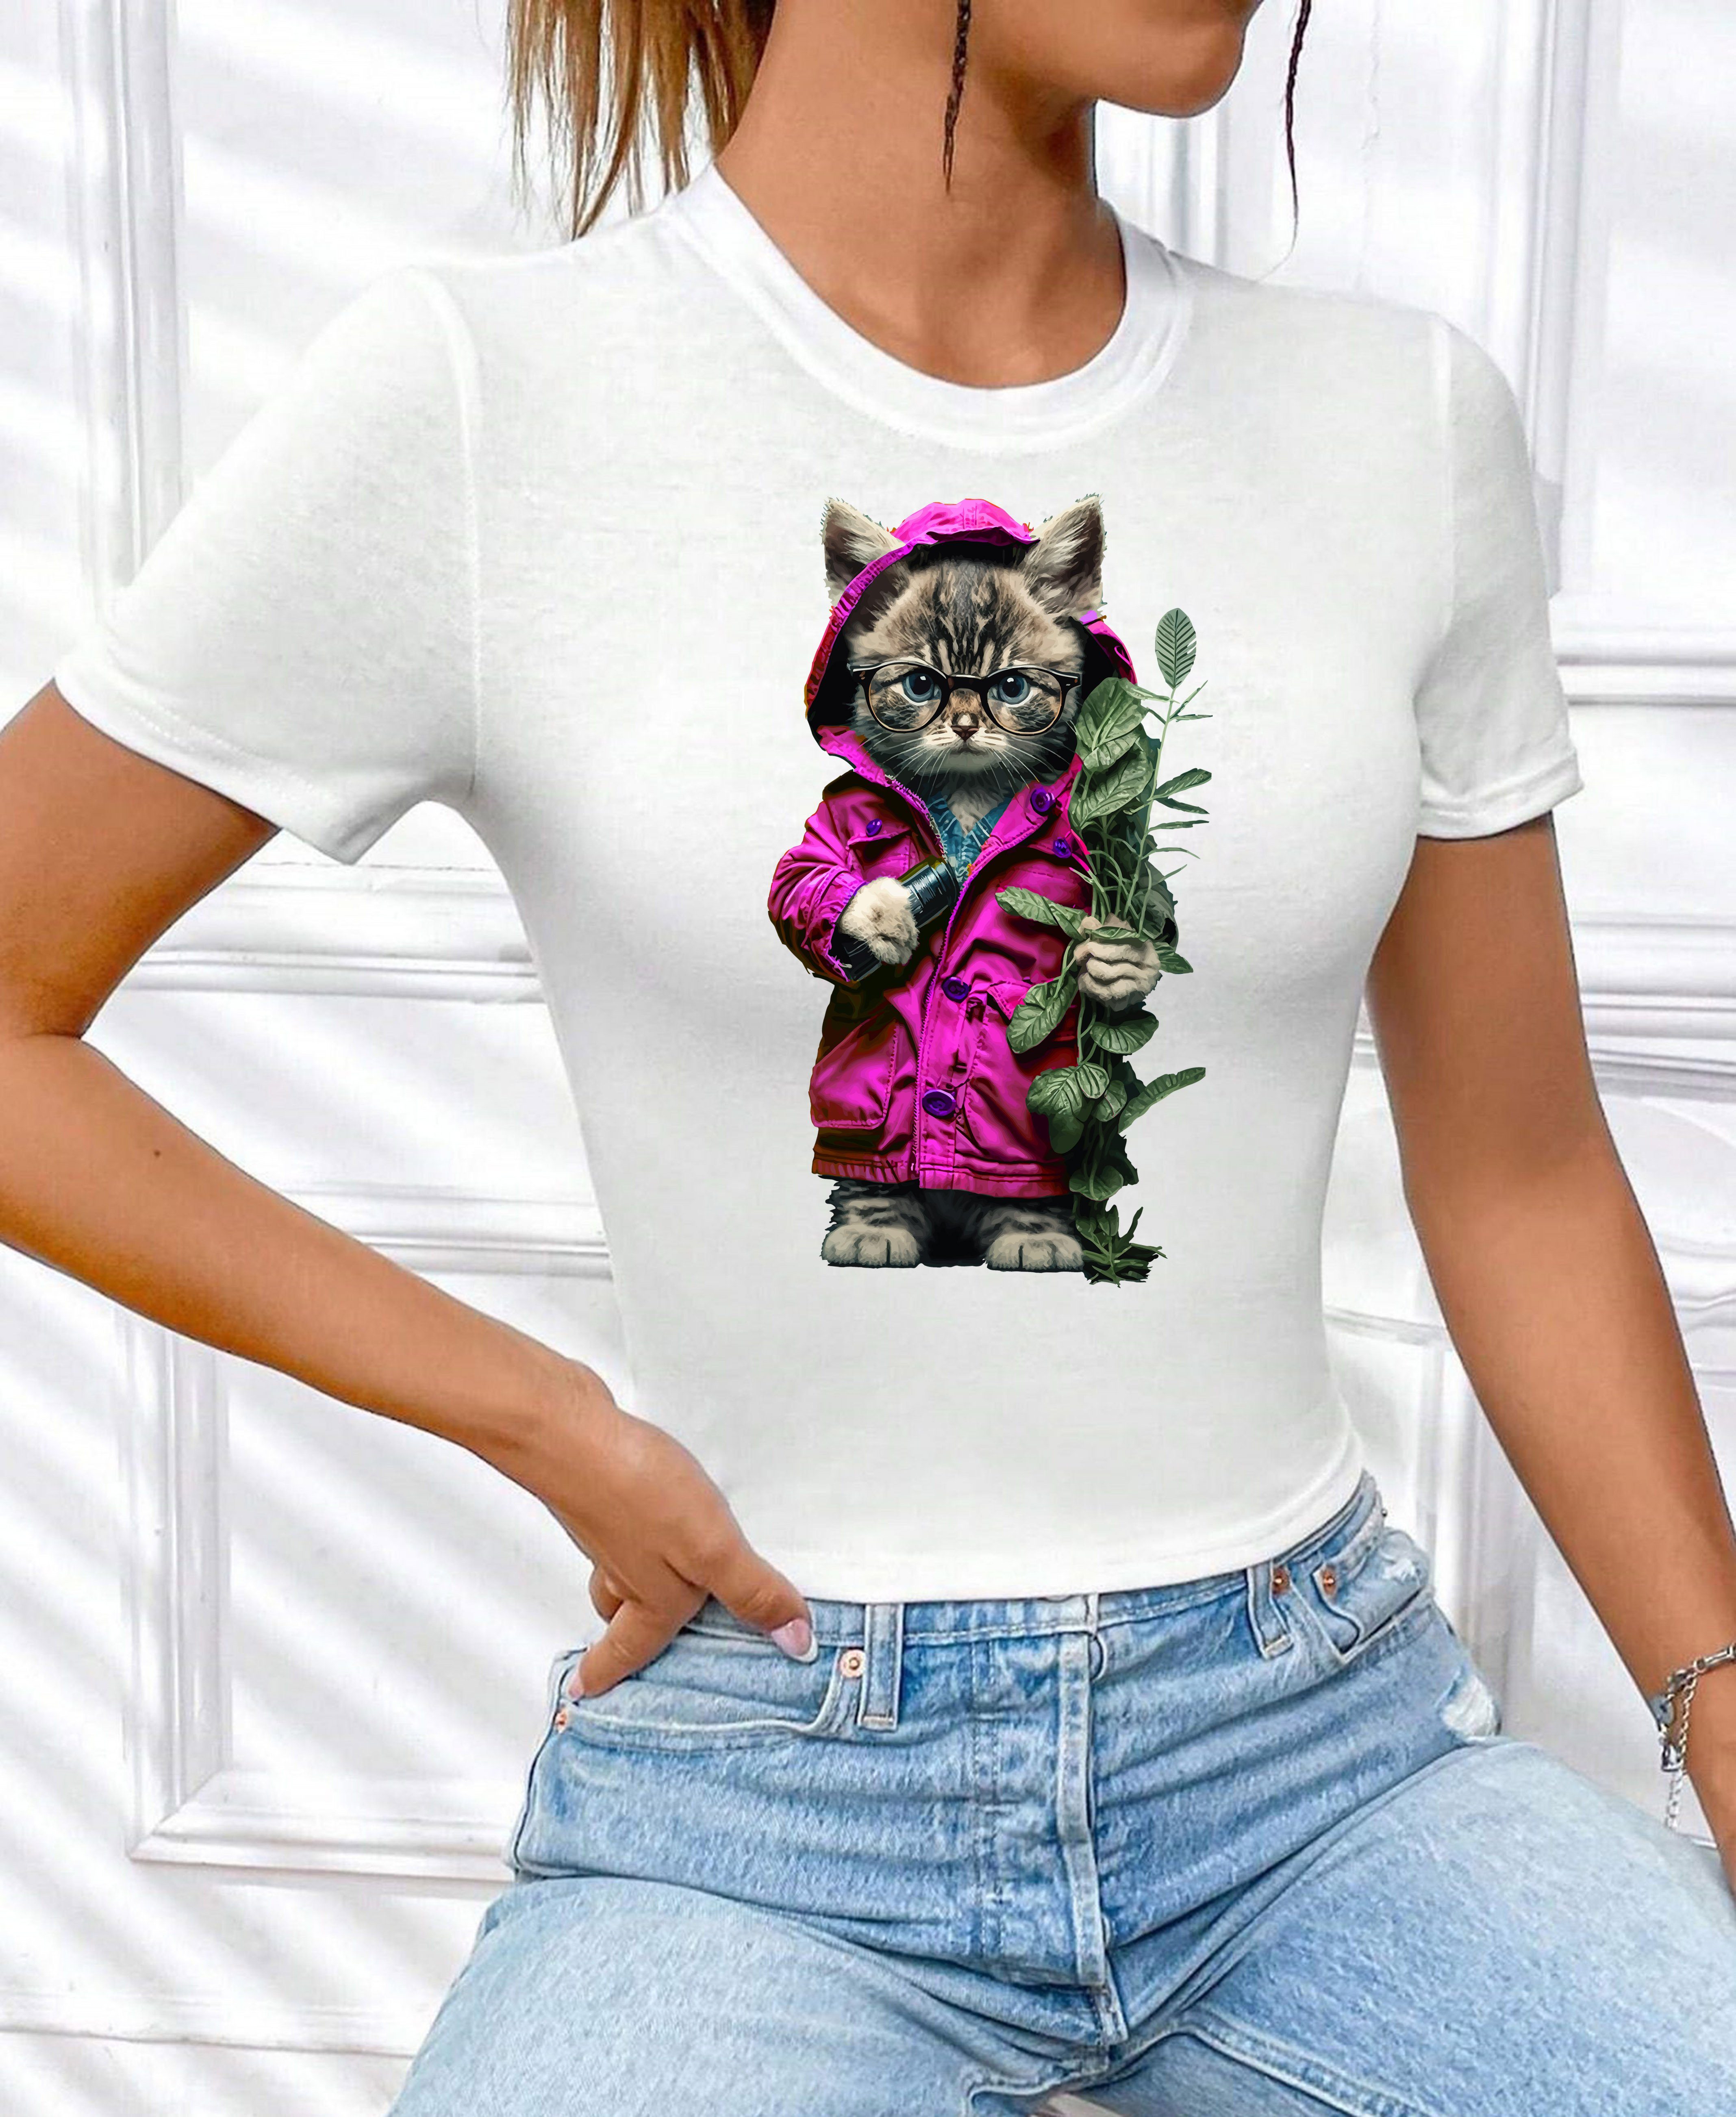 Top RMK kurzarm Baumwolle, Freizeit T-Shirt "Cat Rundhals Blume Damen Garten lizenziertem aus Unifarbe, Weiß-Pink_2 Print mit Katze" Shirt in